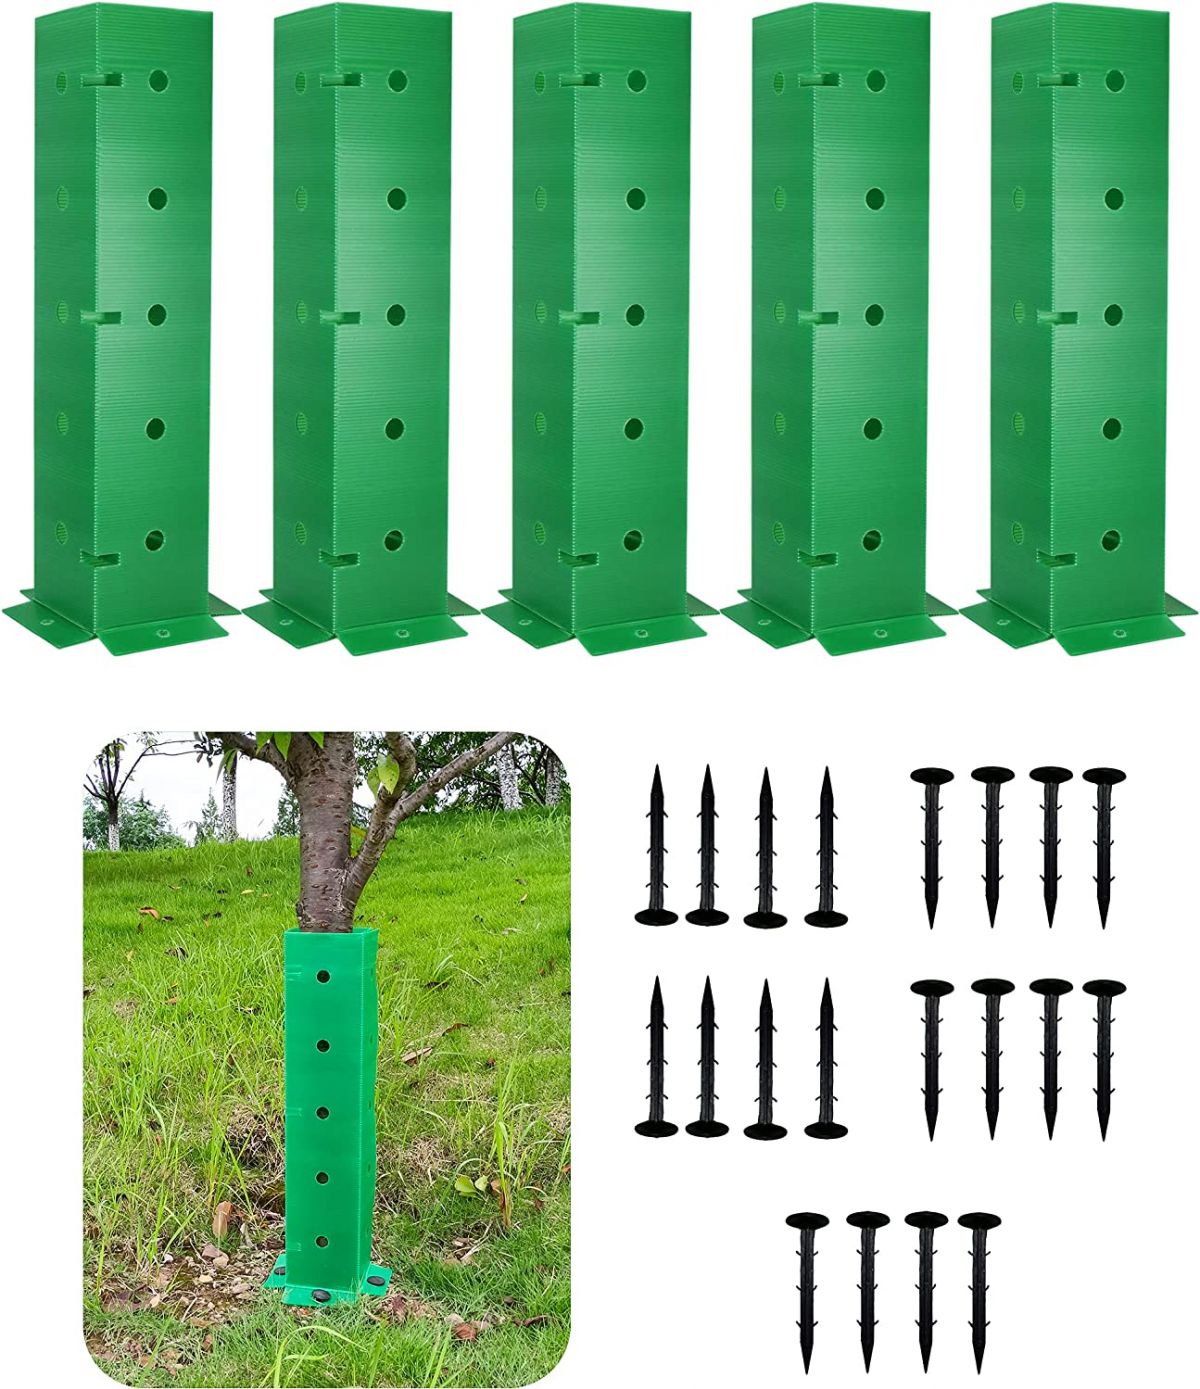 Защита ствола дерева Superb Symbols, высота 114 см, зеленая, 5 шт.